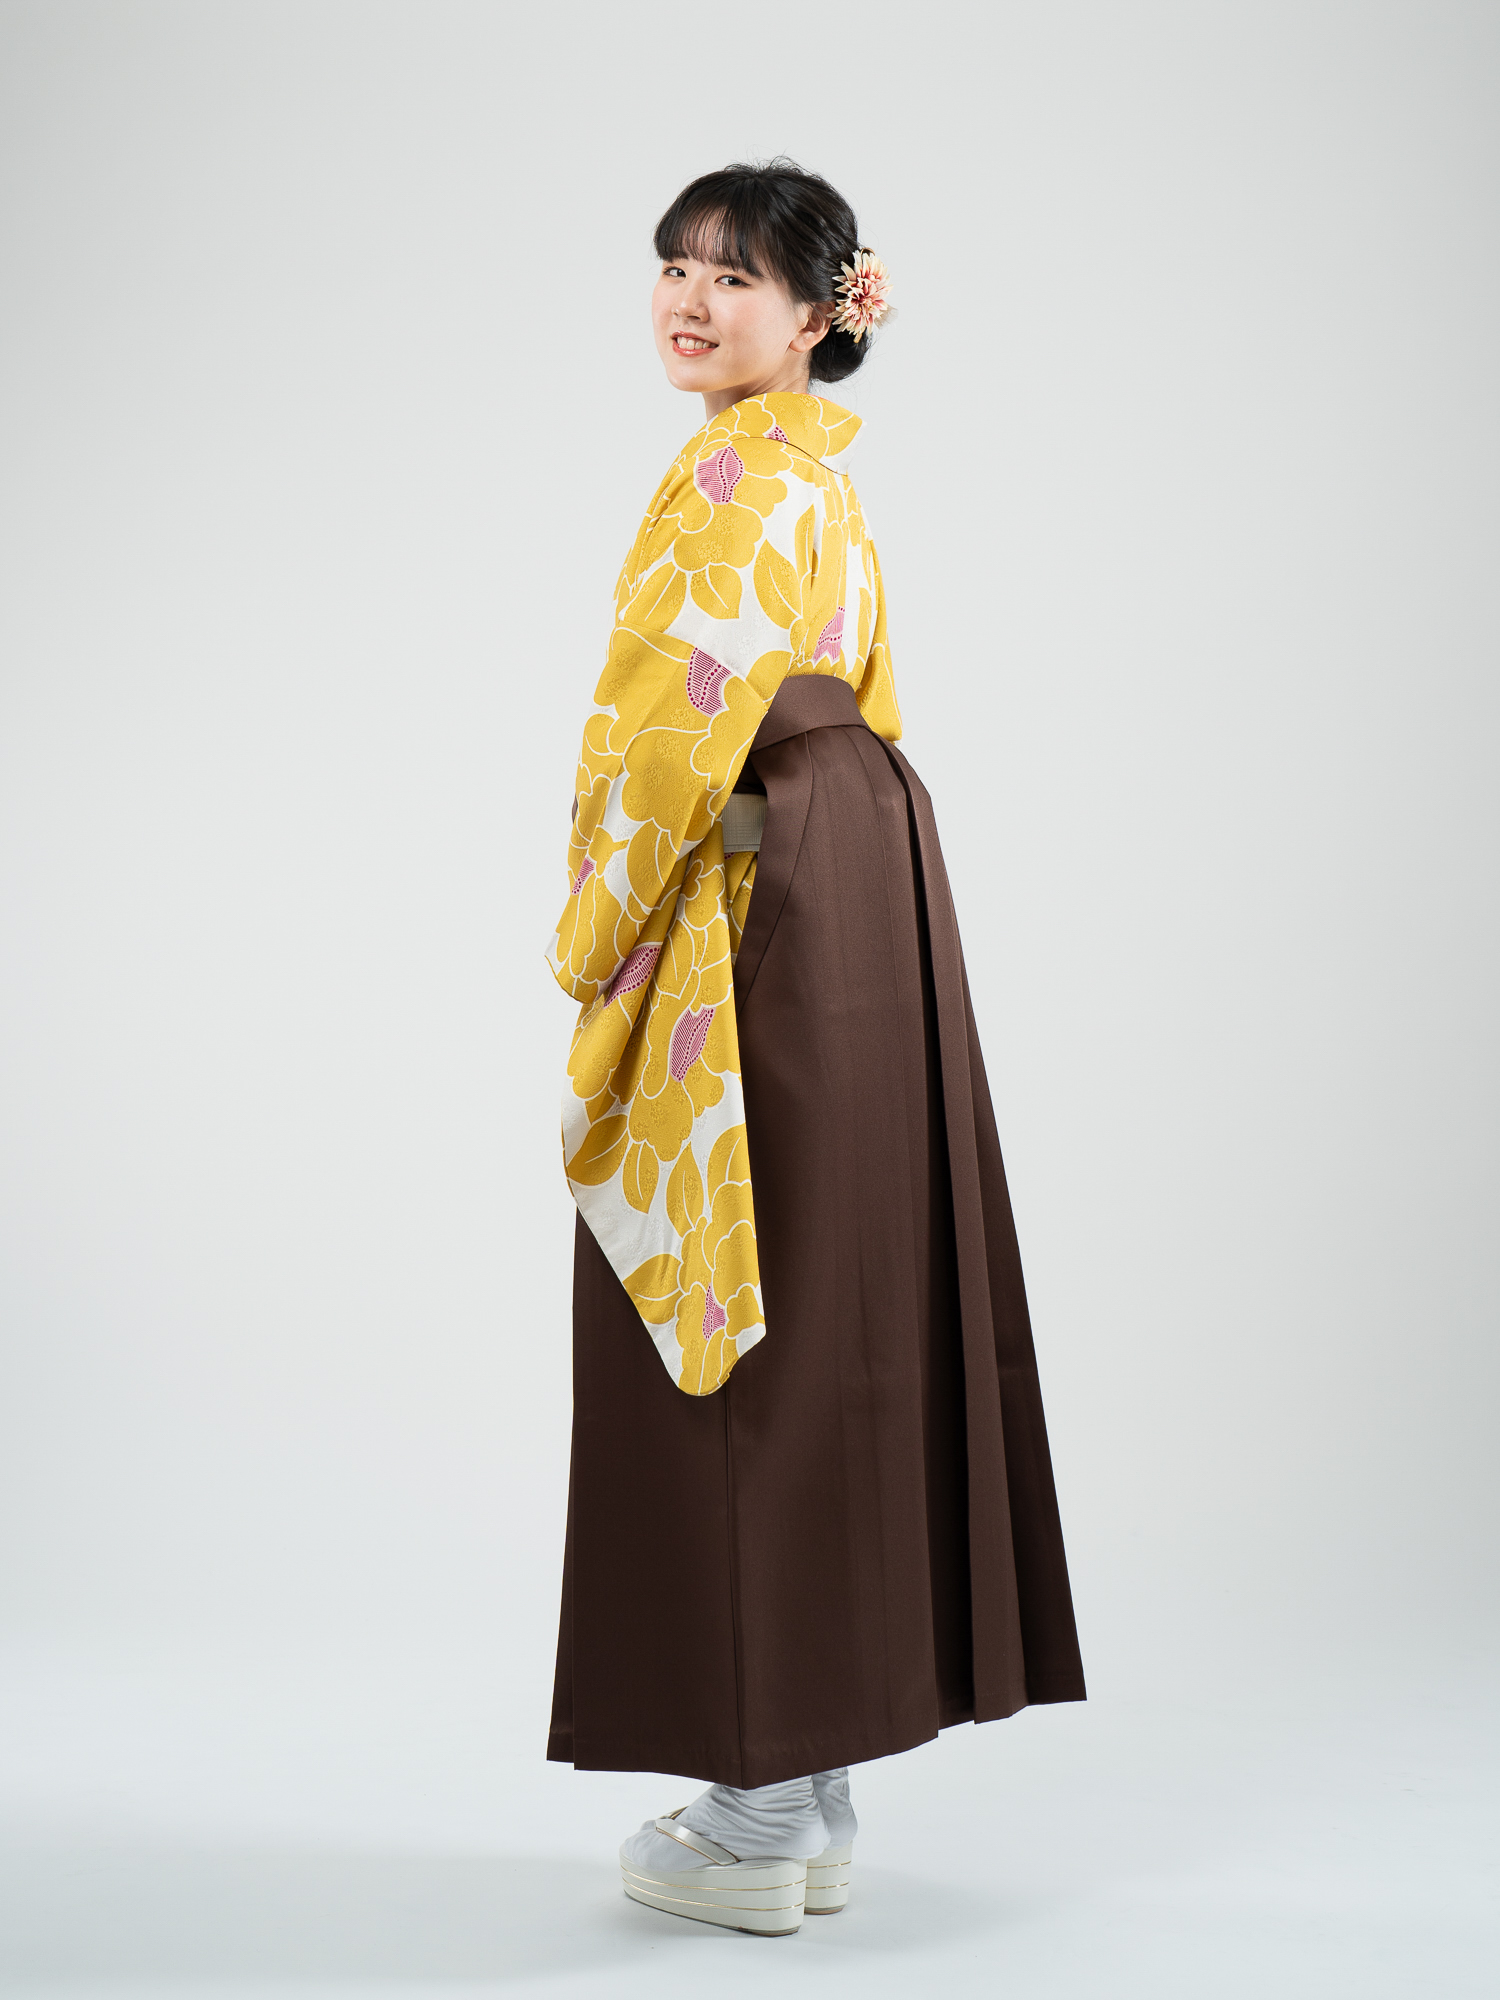 品番2-63の正絹着物と袴レンタルの横からの姿